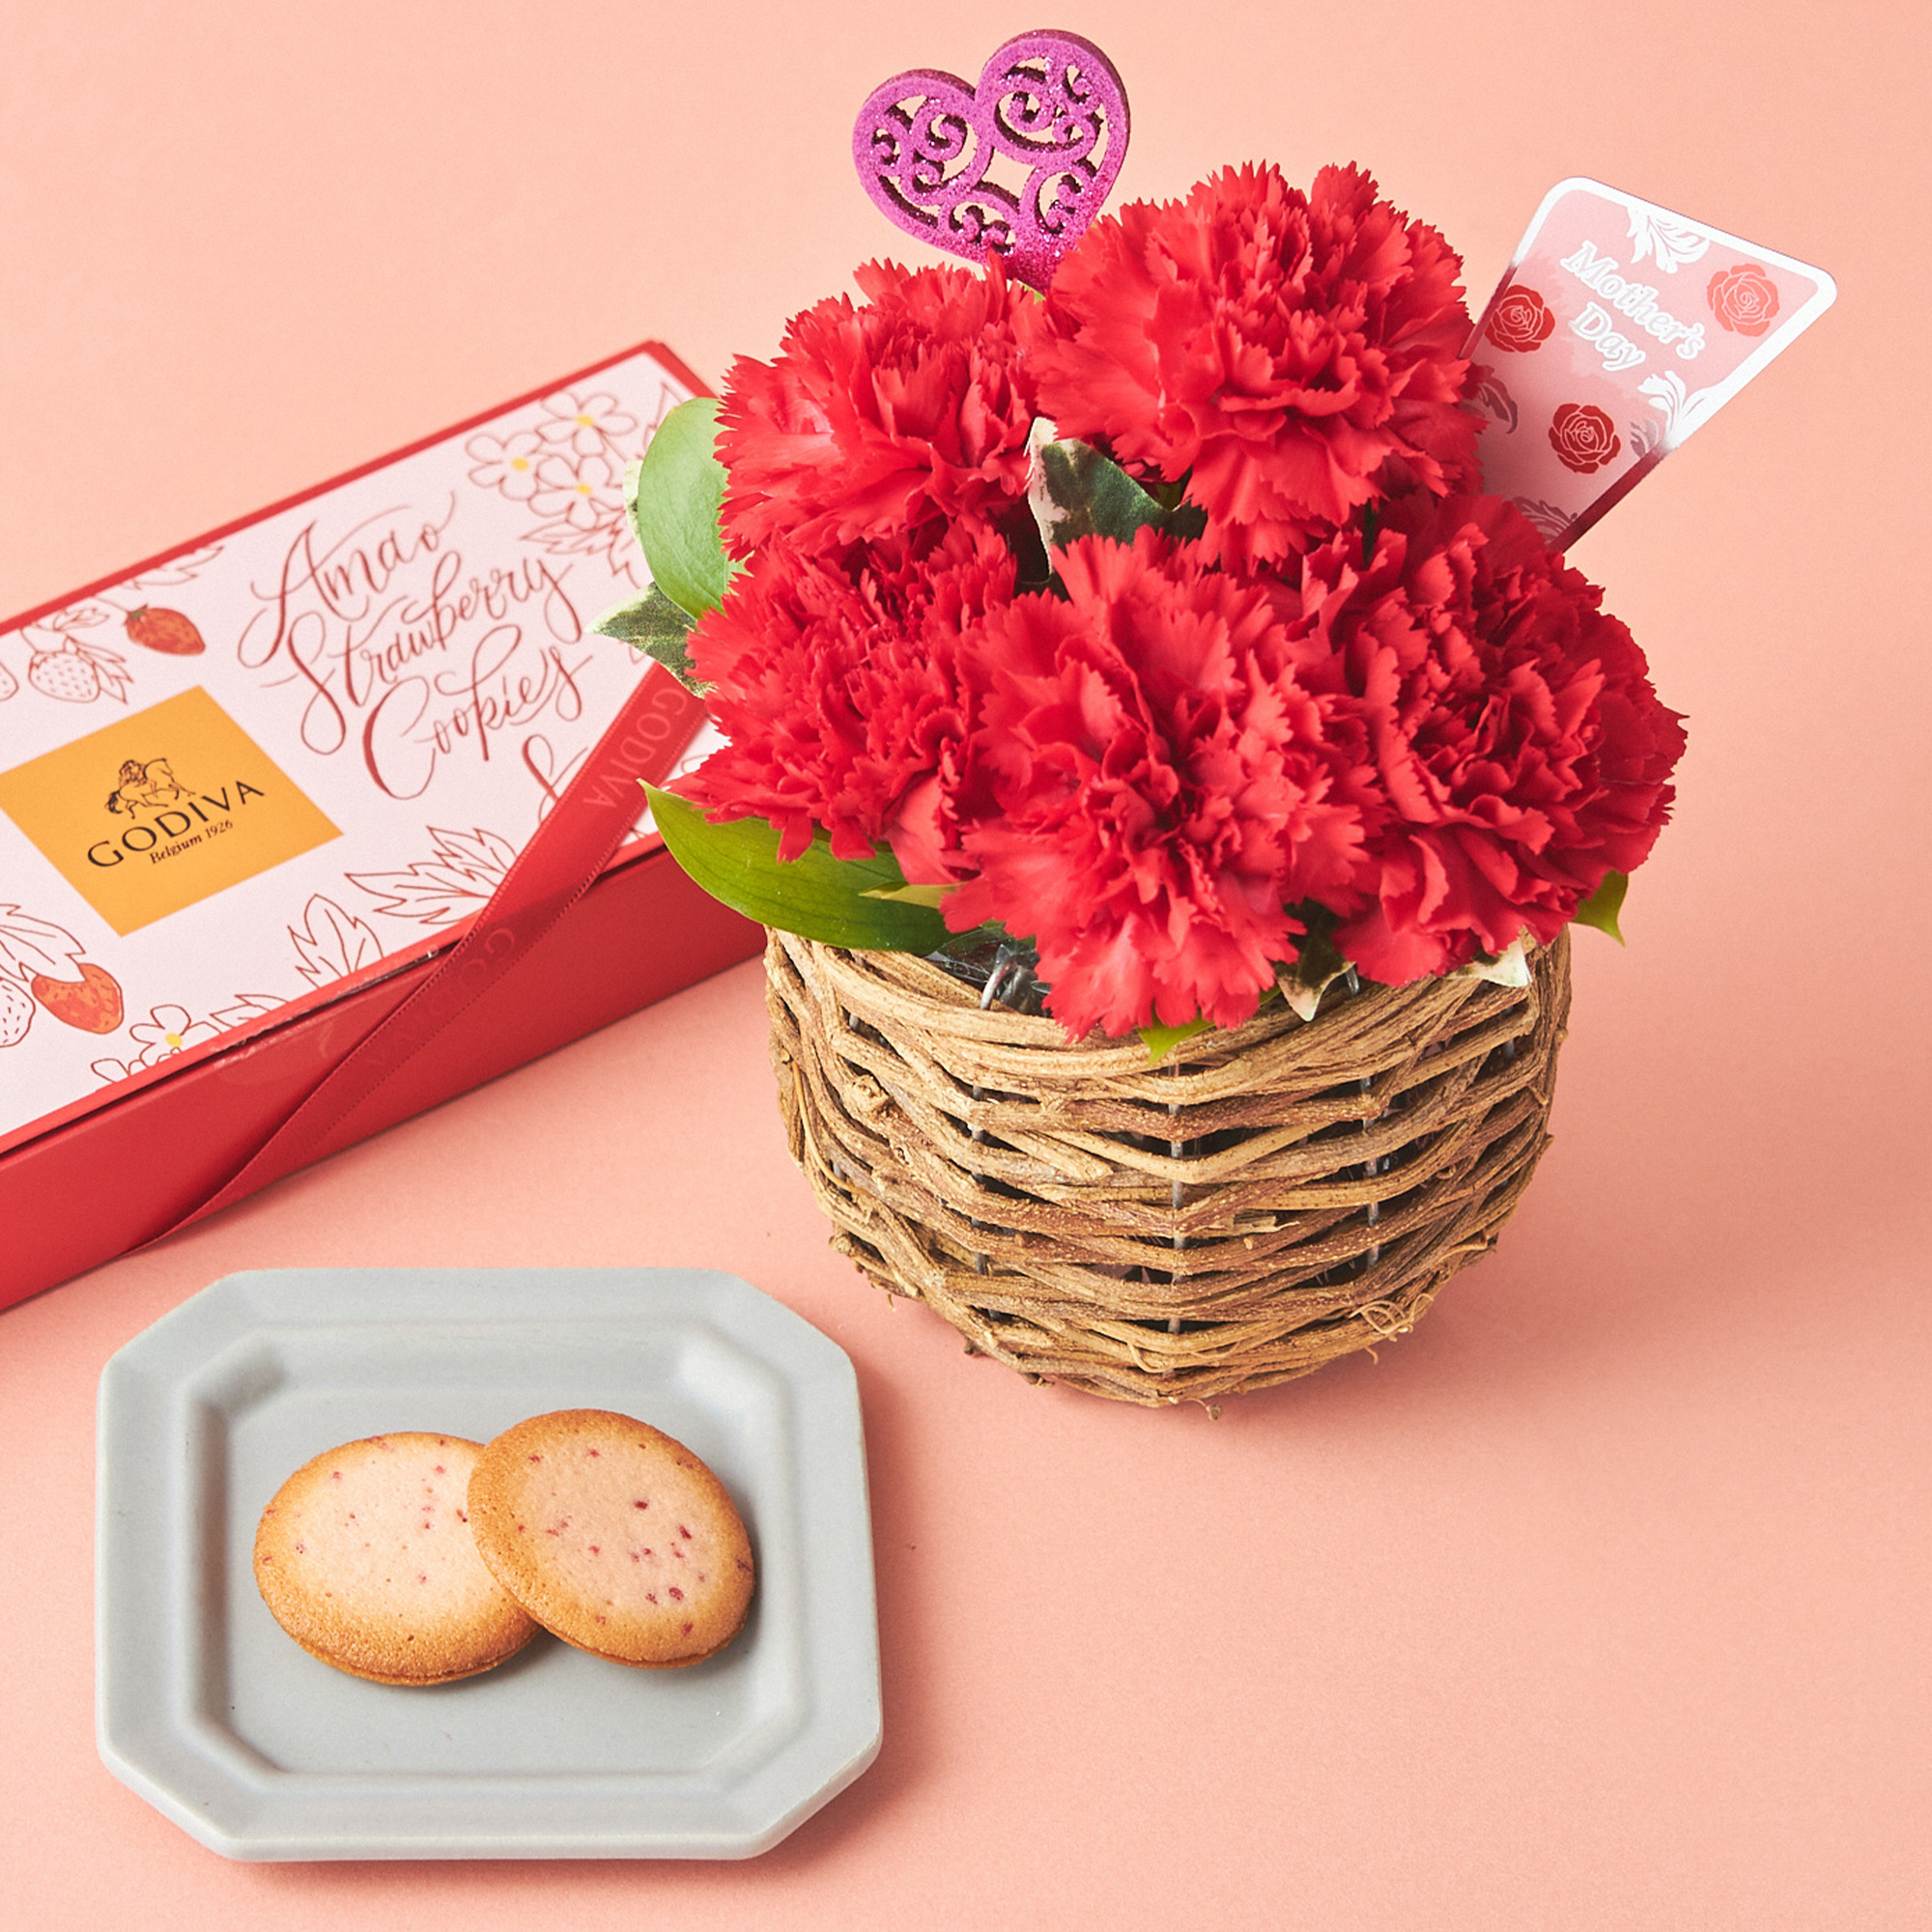 【送料無料】GODIVAクッキーと生花カーネーション アレンジメントのセット【母の日に贈る】